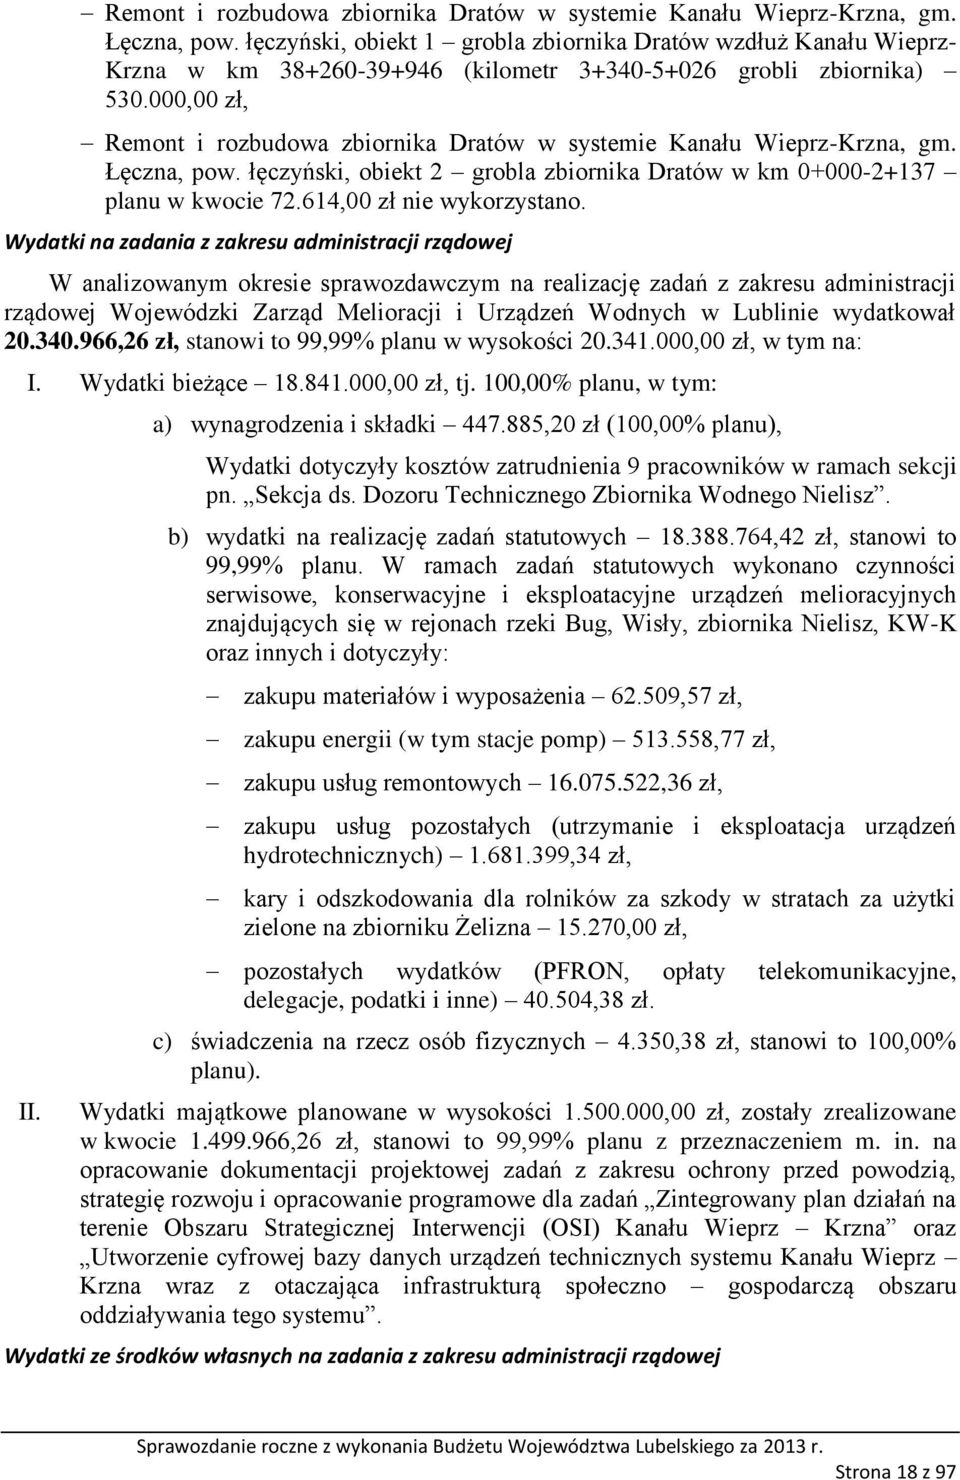 000,00 zł,  łęczyński, obiekt 2 grobla zbiornika Dratów w km 0+000-2+137 planu w kwocie 72.614,00 zł nie wykorzystano.